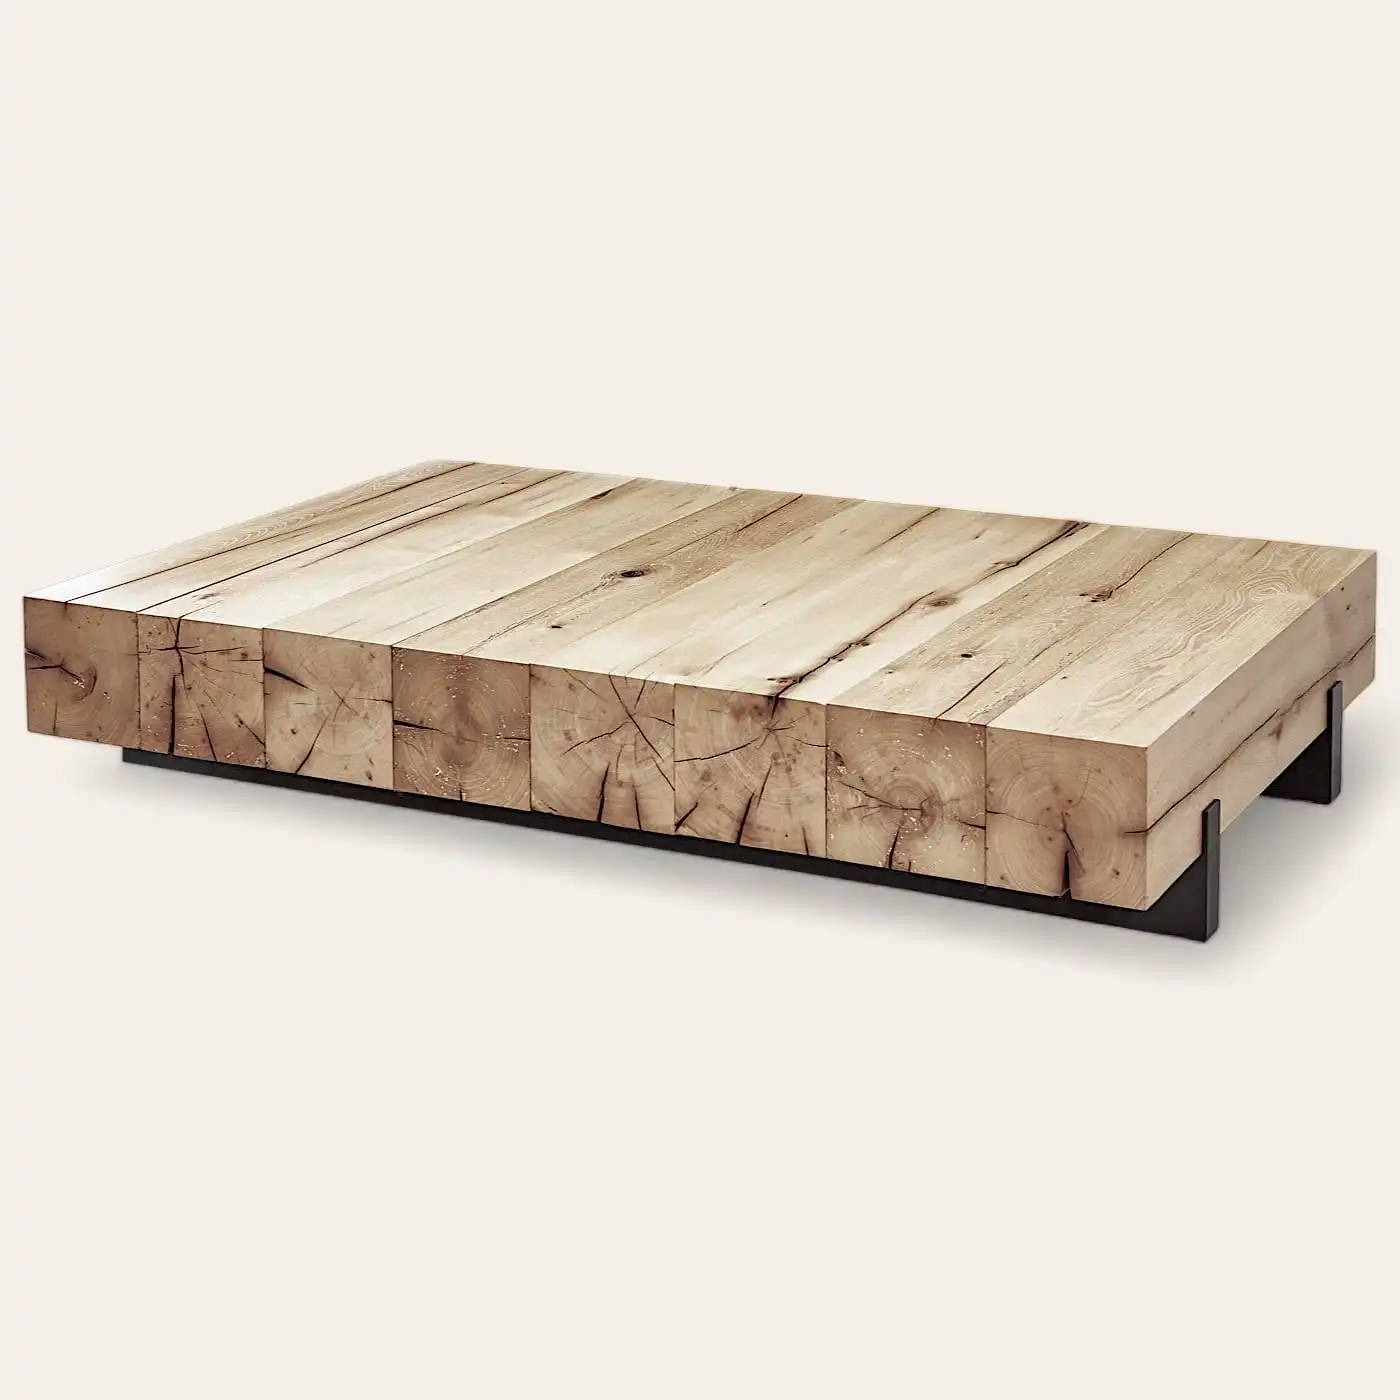  Une table basse rustique en bois avec une base noire. 